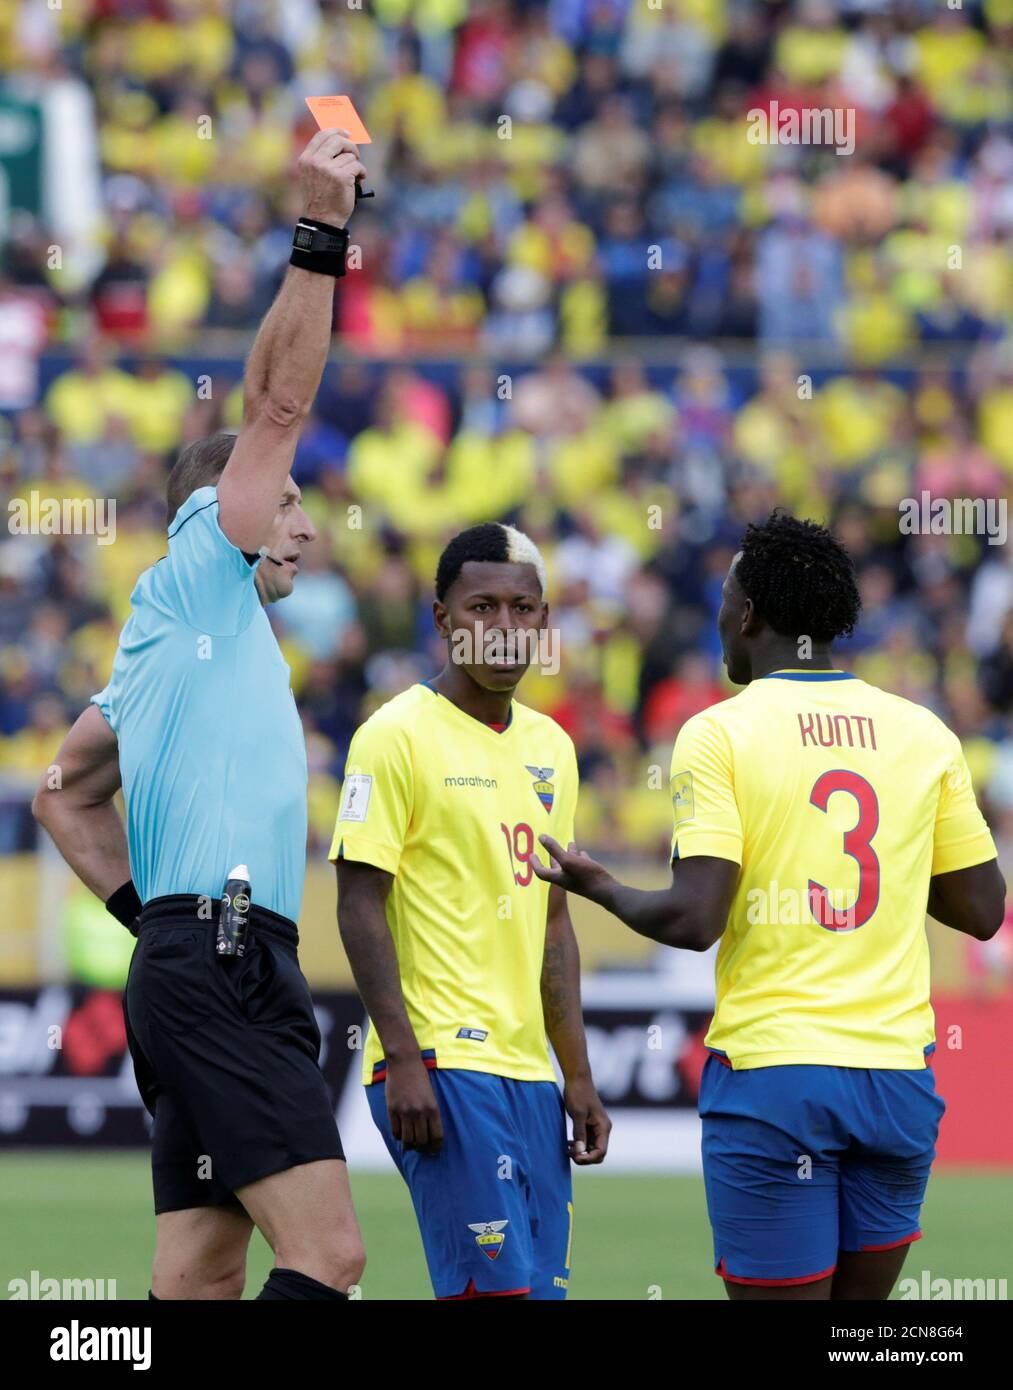 Football Soccer- Ecuador v Colombia- World Cup 2018 Qualifiers - Quito,  Ecuador - 28/3/17. Referee Nestor Pitana shows a red card to Ecuador's  player Luis "Kunti" Caicedo. REUTERS/Henry Romero Stock Photo - Alamy